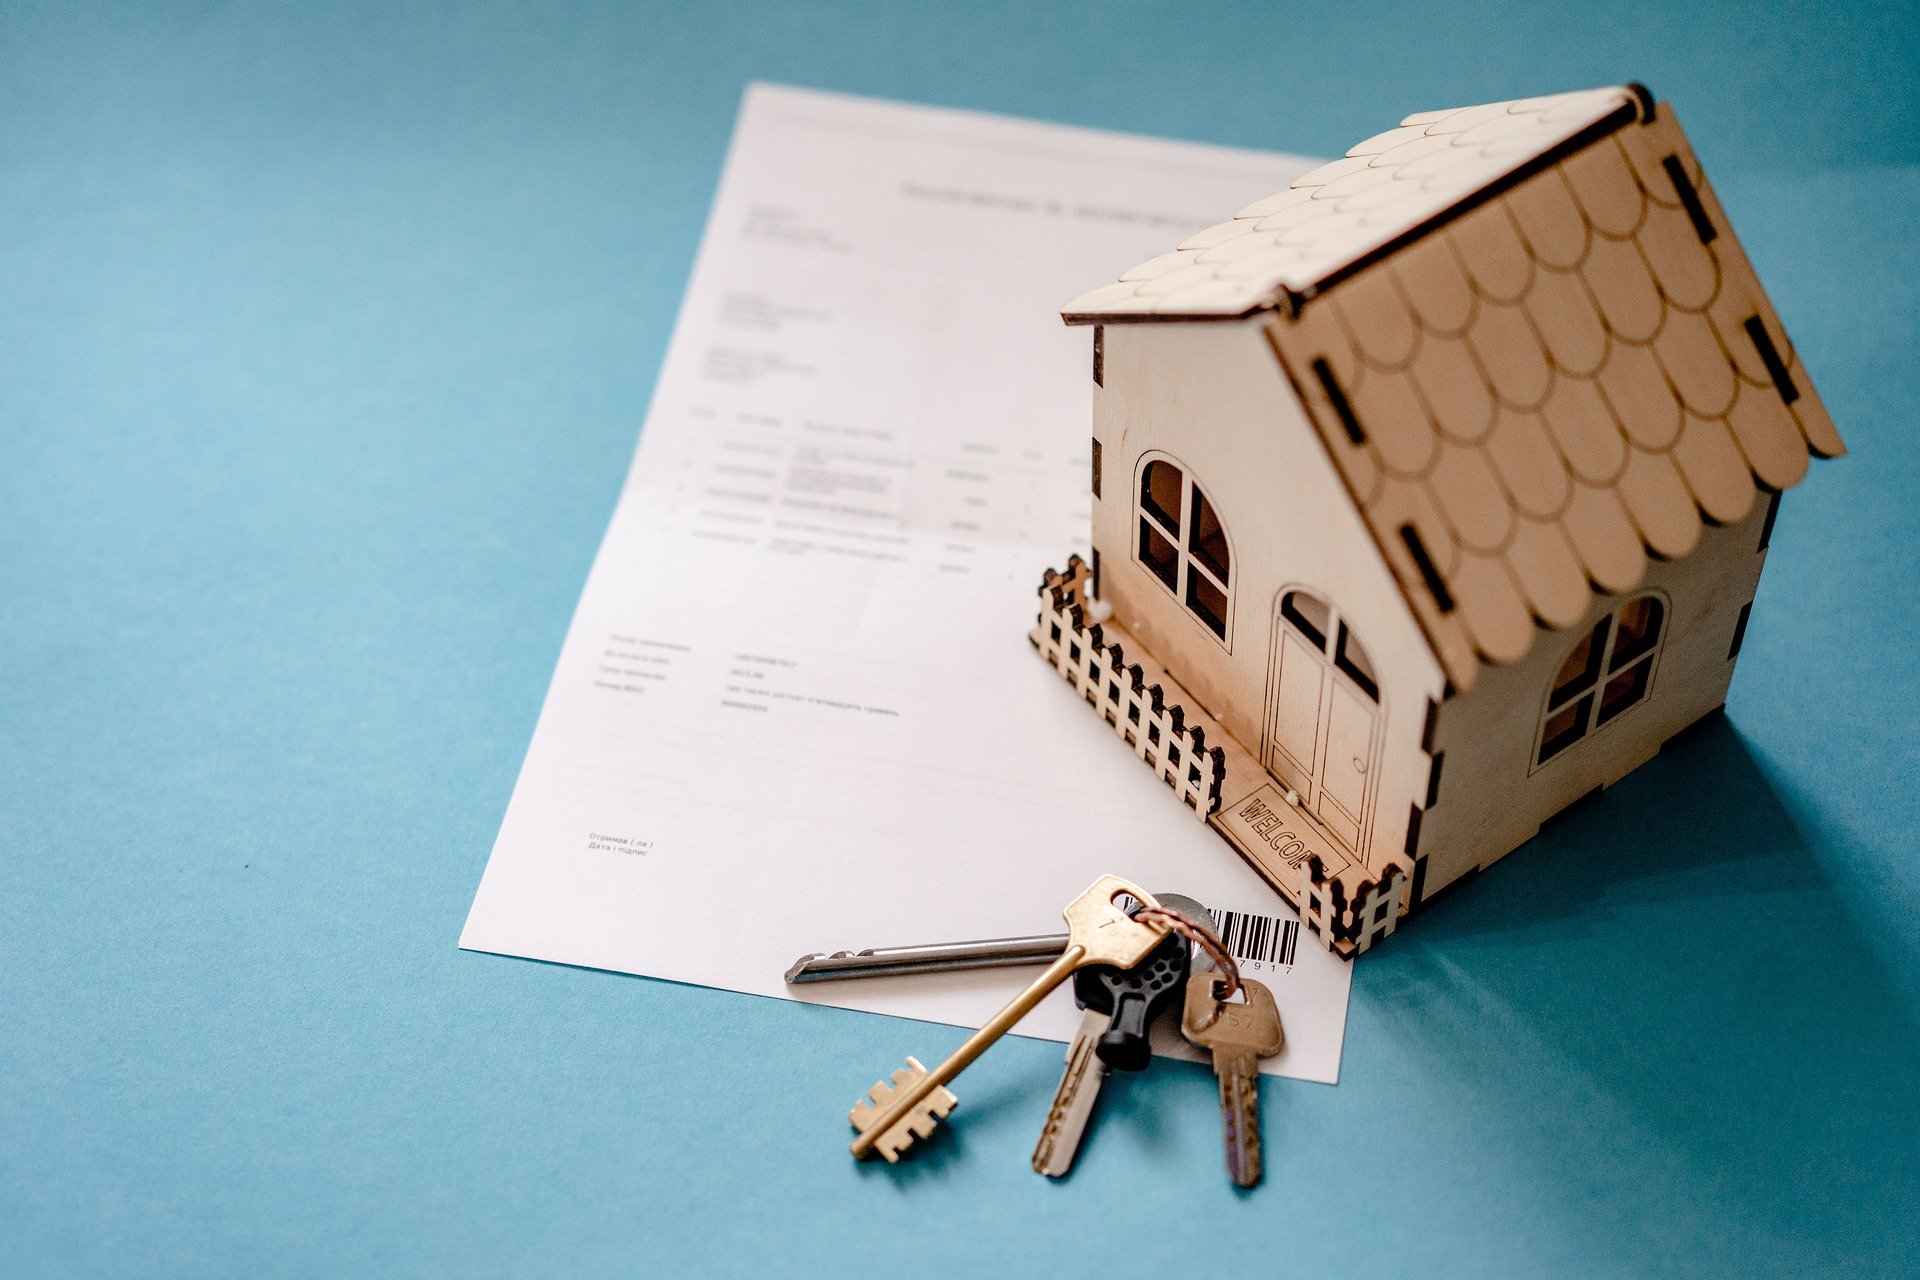 Ипотека в новых реалиях: можно ли сегодня выгодно купить жилье в кредит? - фото 2